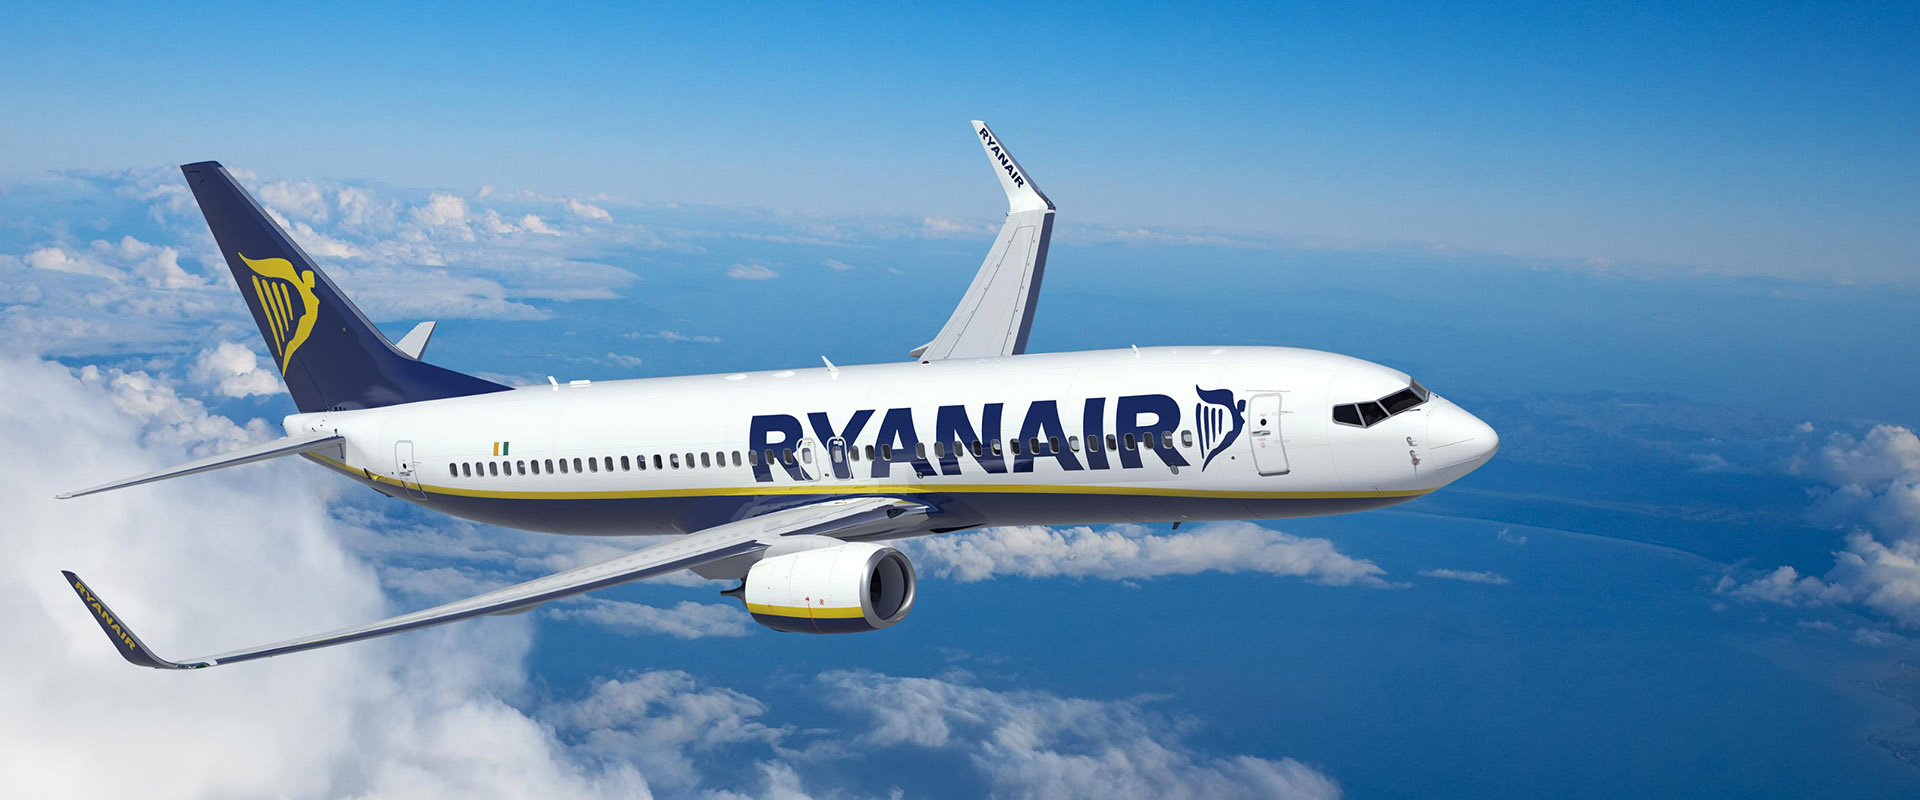 Ryanair Lanza Una Oferta Masiva De 24 Horas Con Un Millón De Asientos Disponibles Por Tan Sólo 9,99€